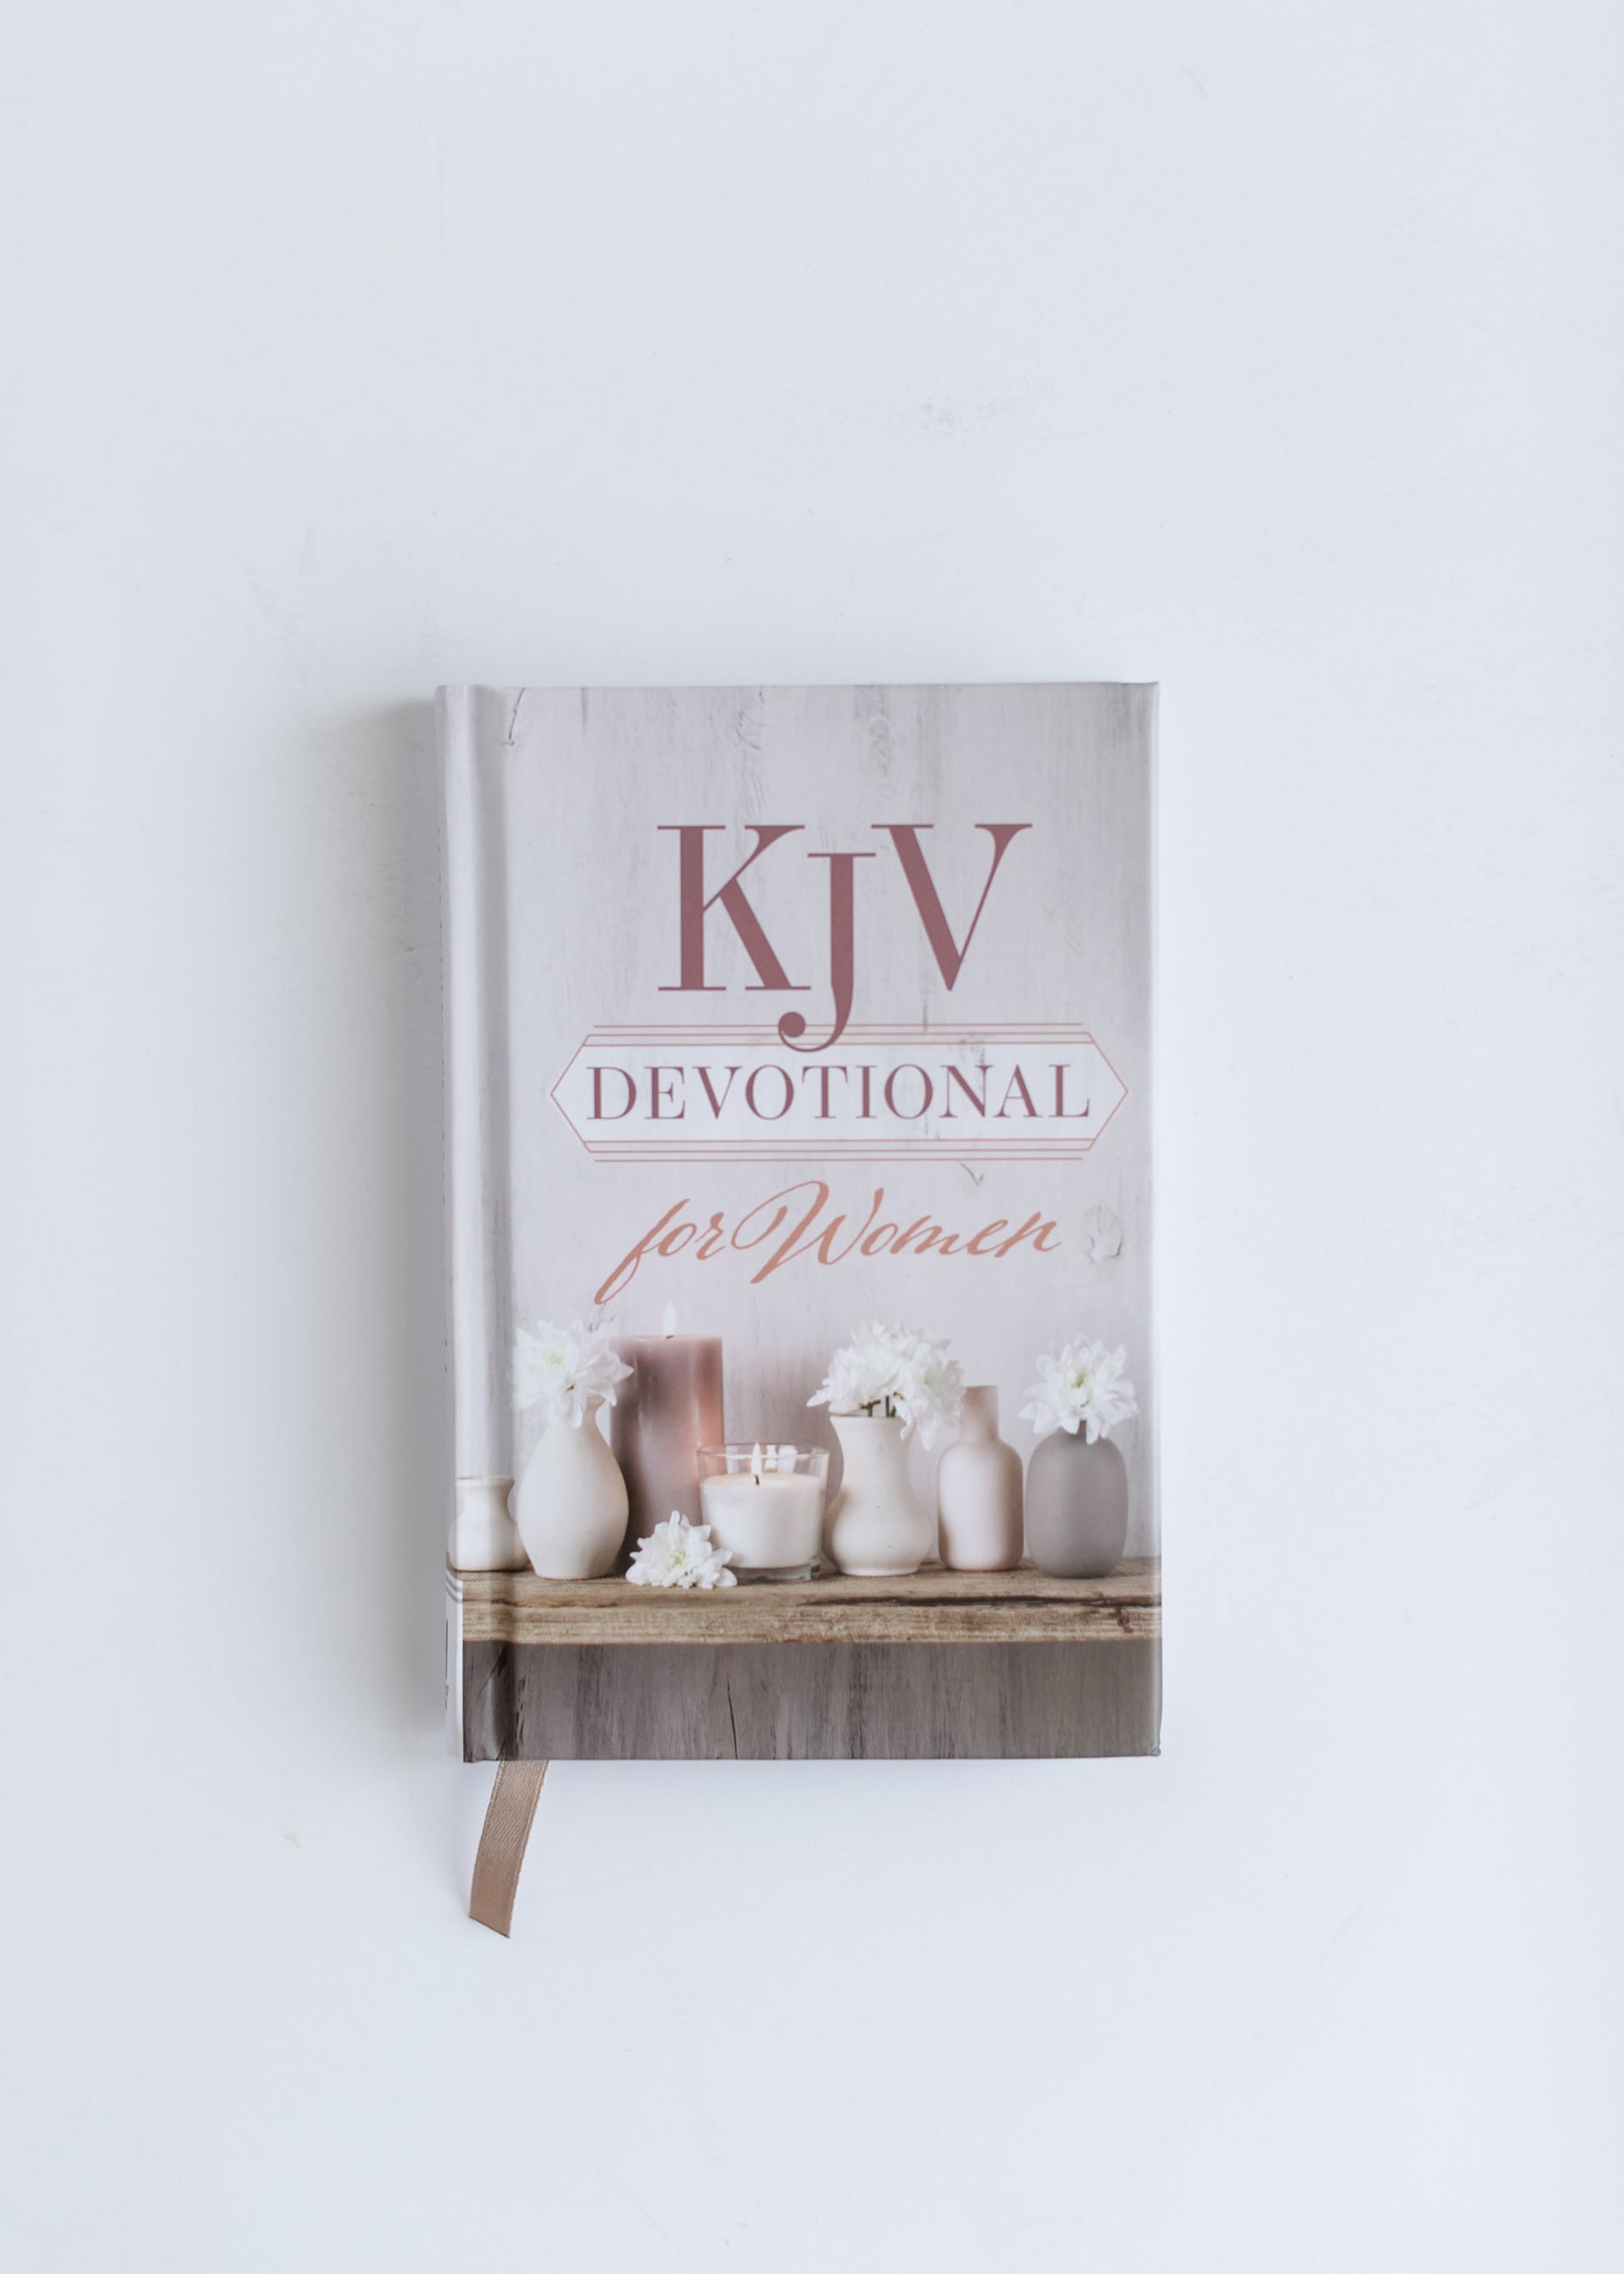 KJV Devotional for Women Gifts